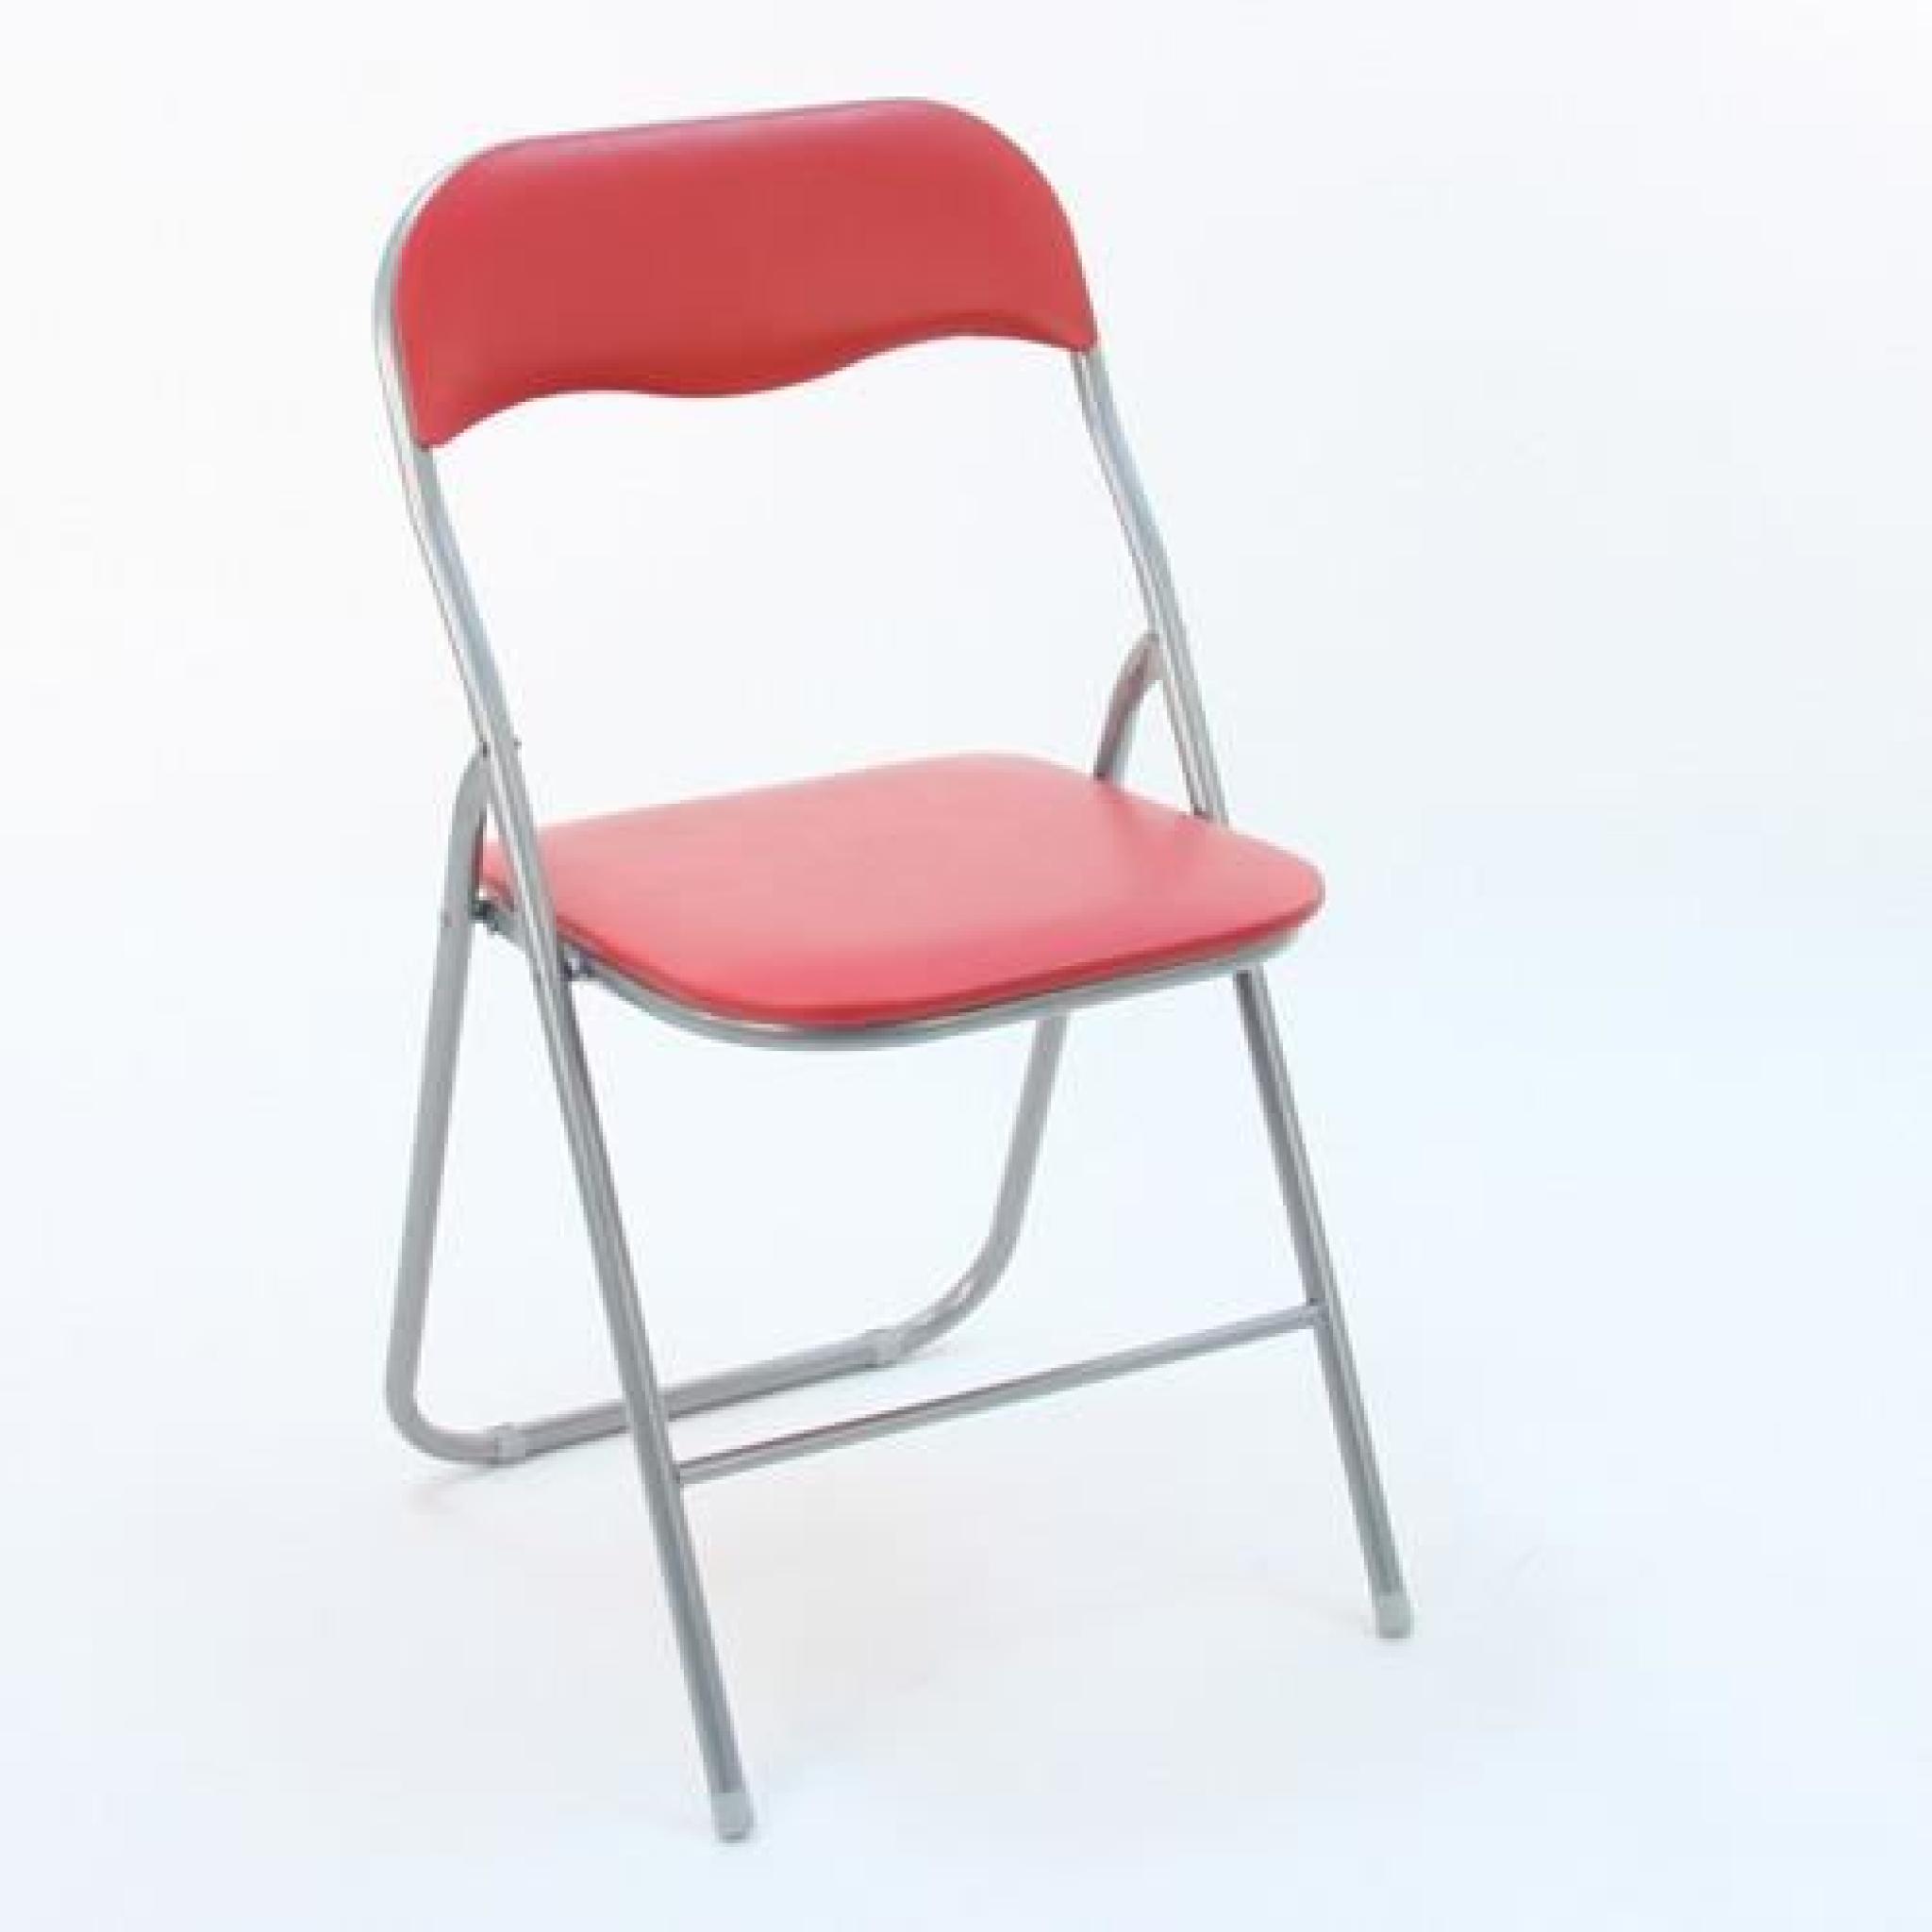 Chaise pliante Colors - Rouge